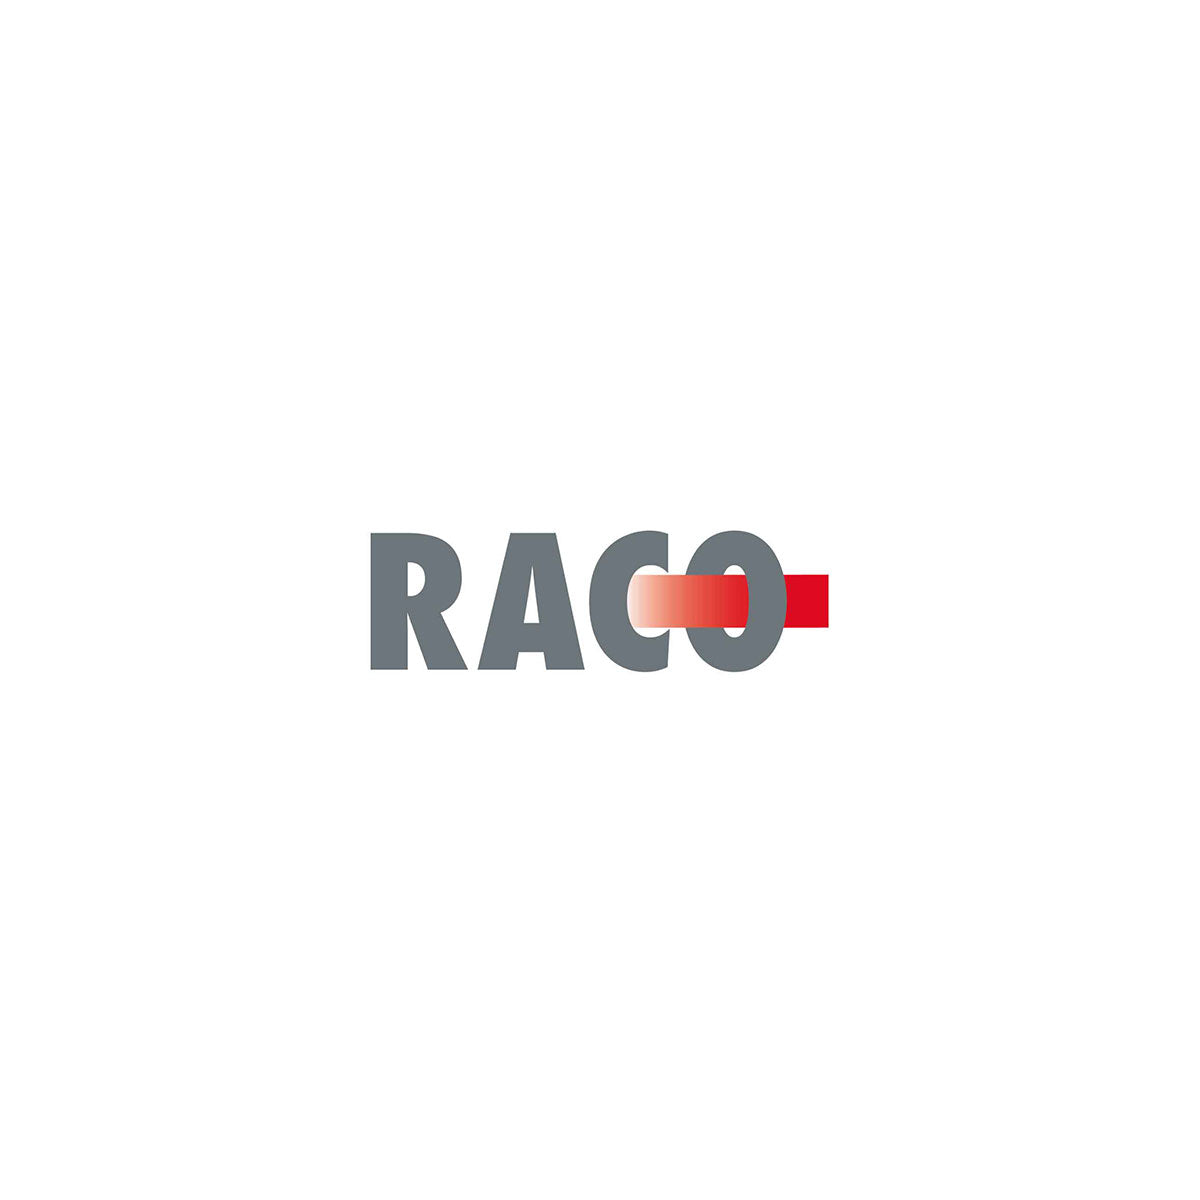 Artikel von Raco